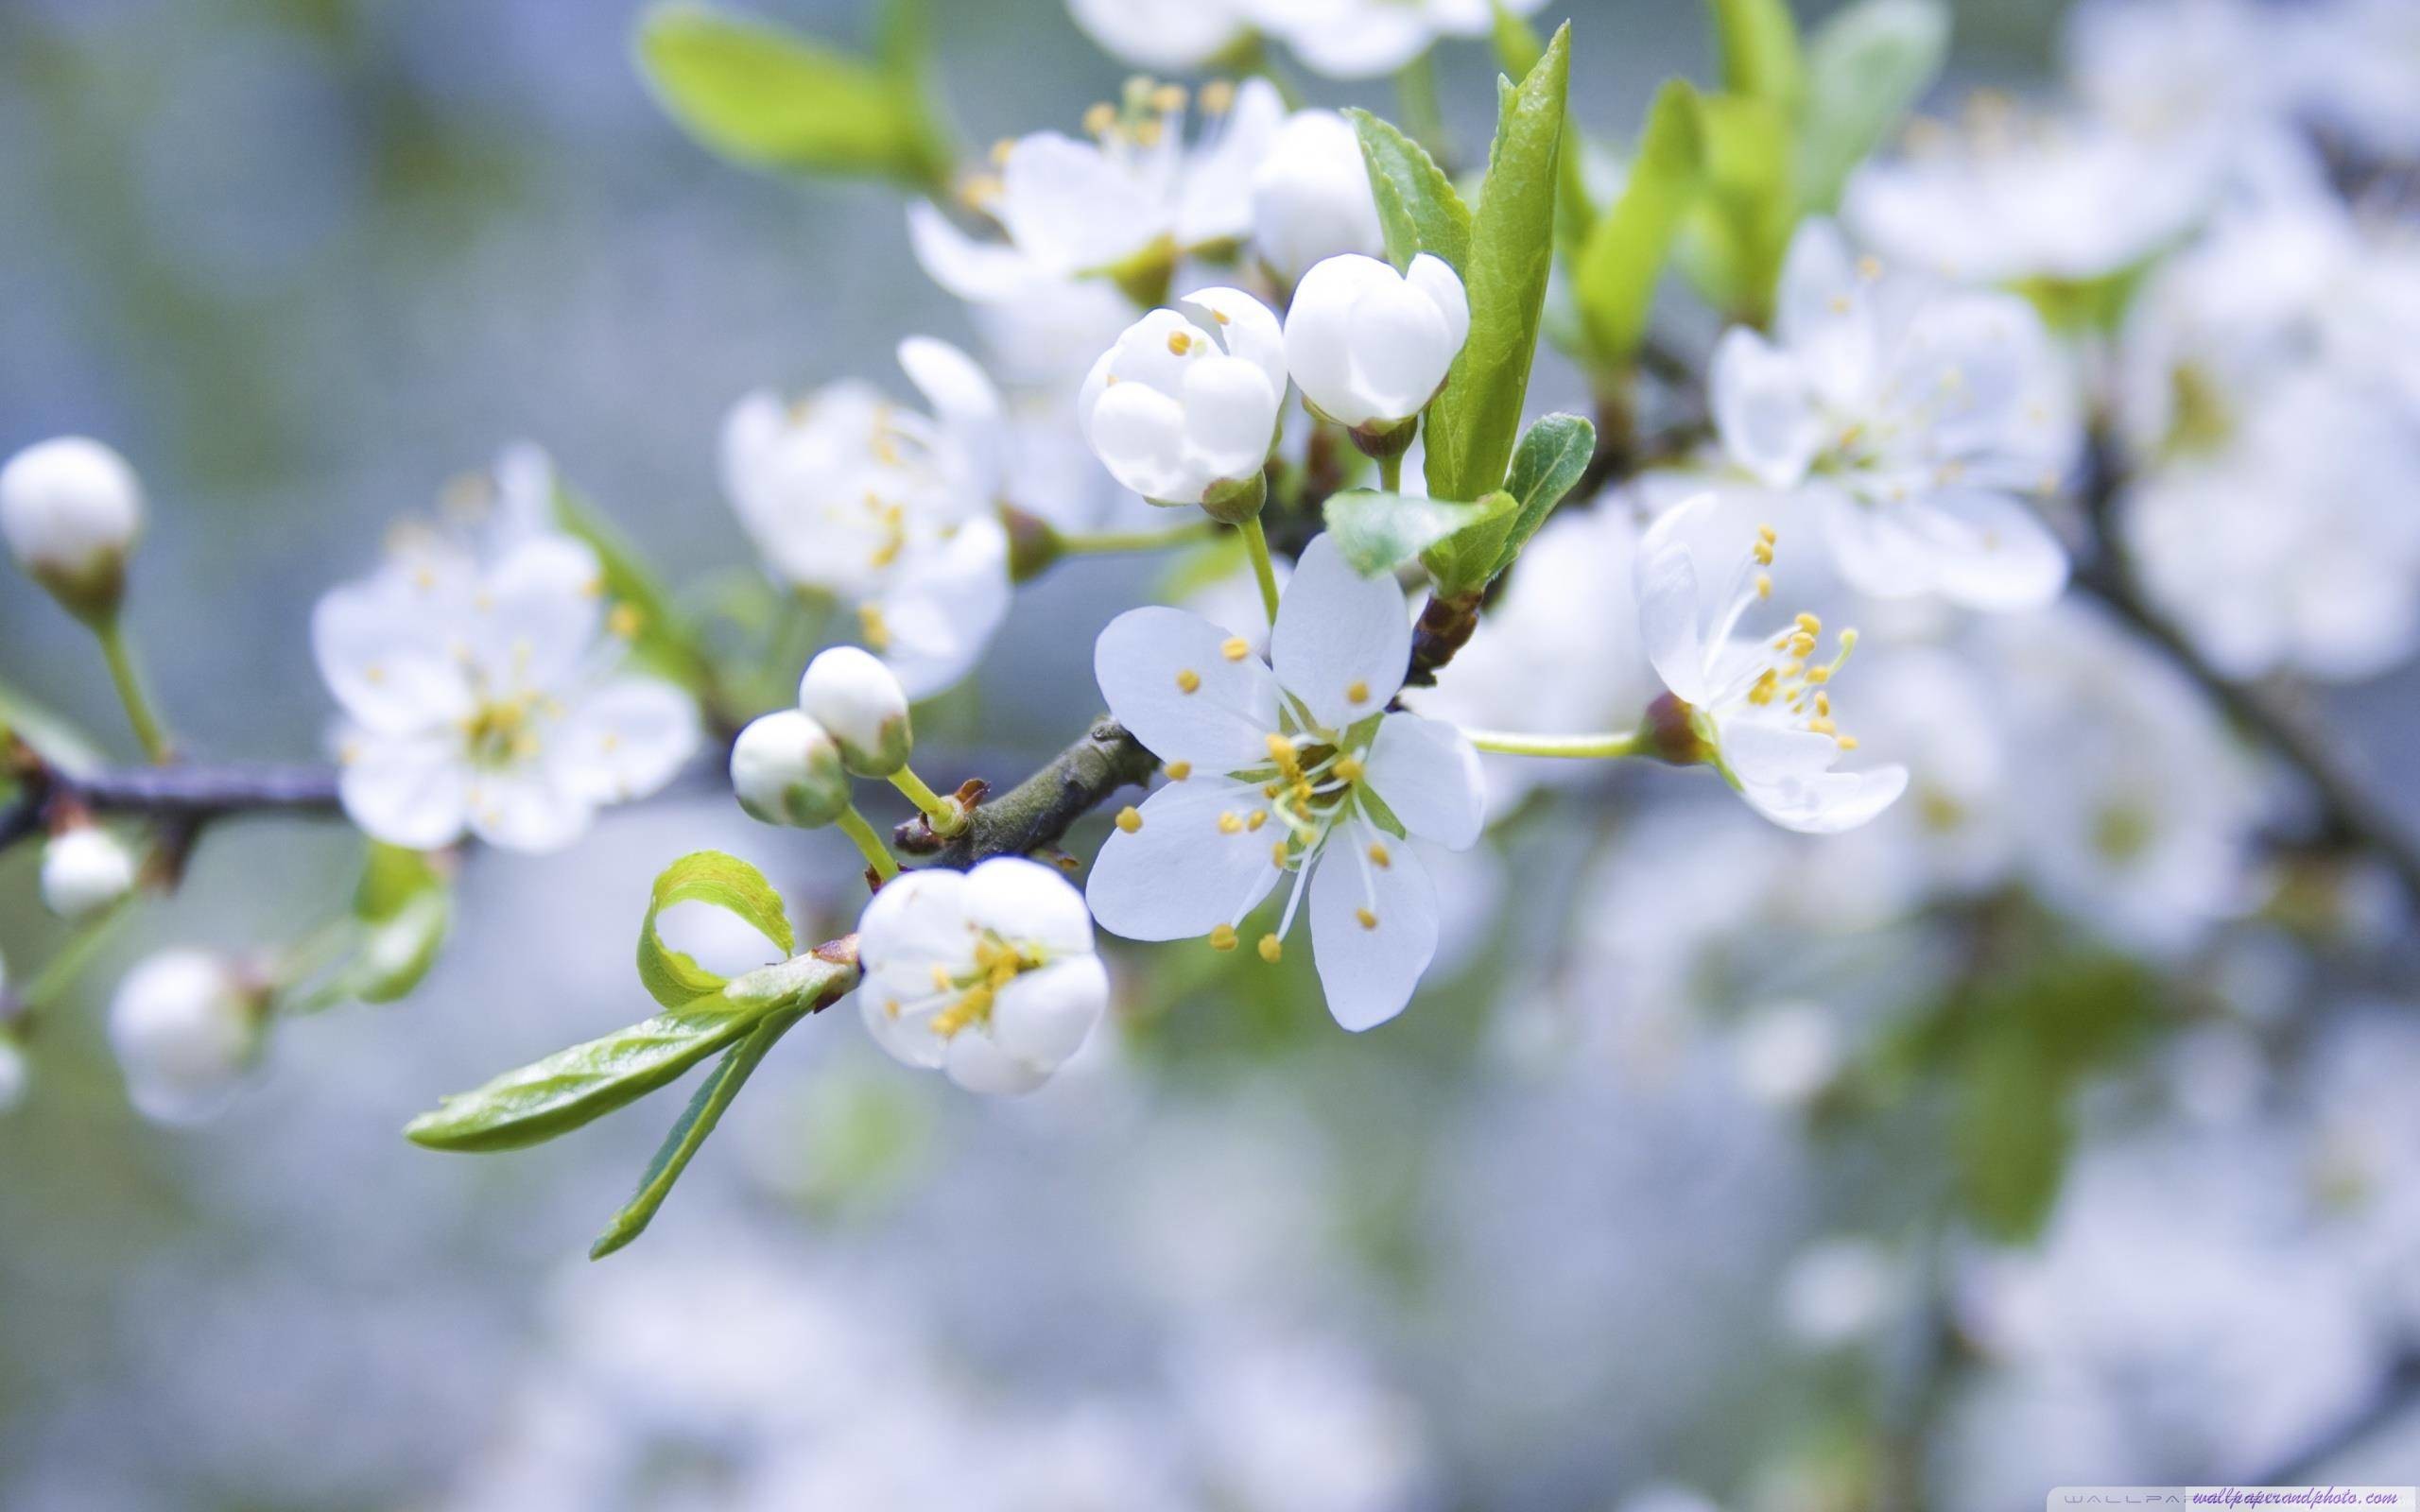 2560x1600 Spring Blossoms HD 16:9 16:10 desktop wallpaper: Widescreen .